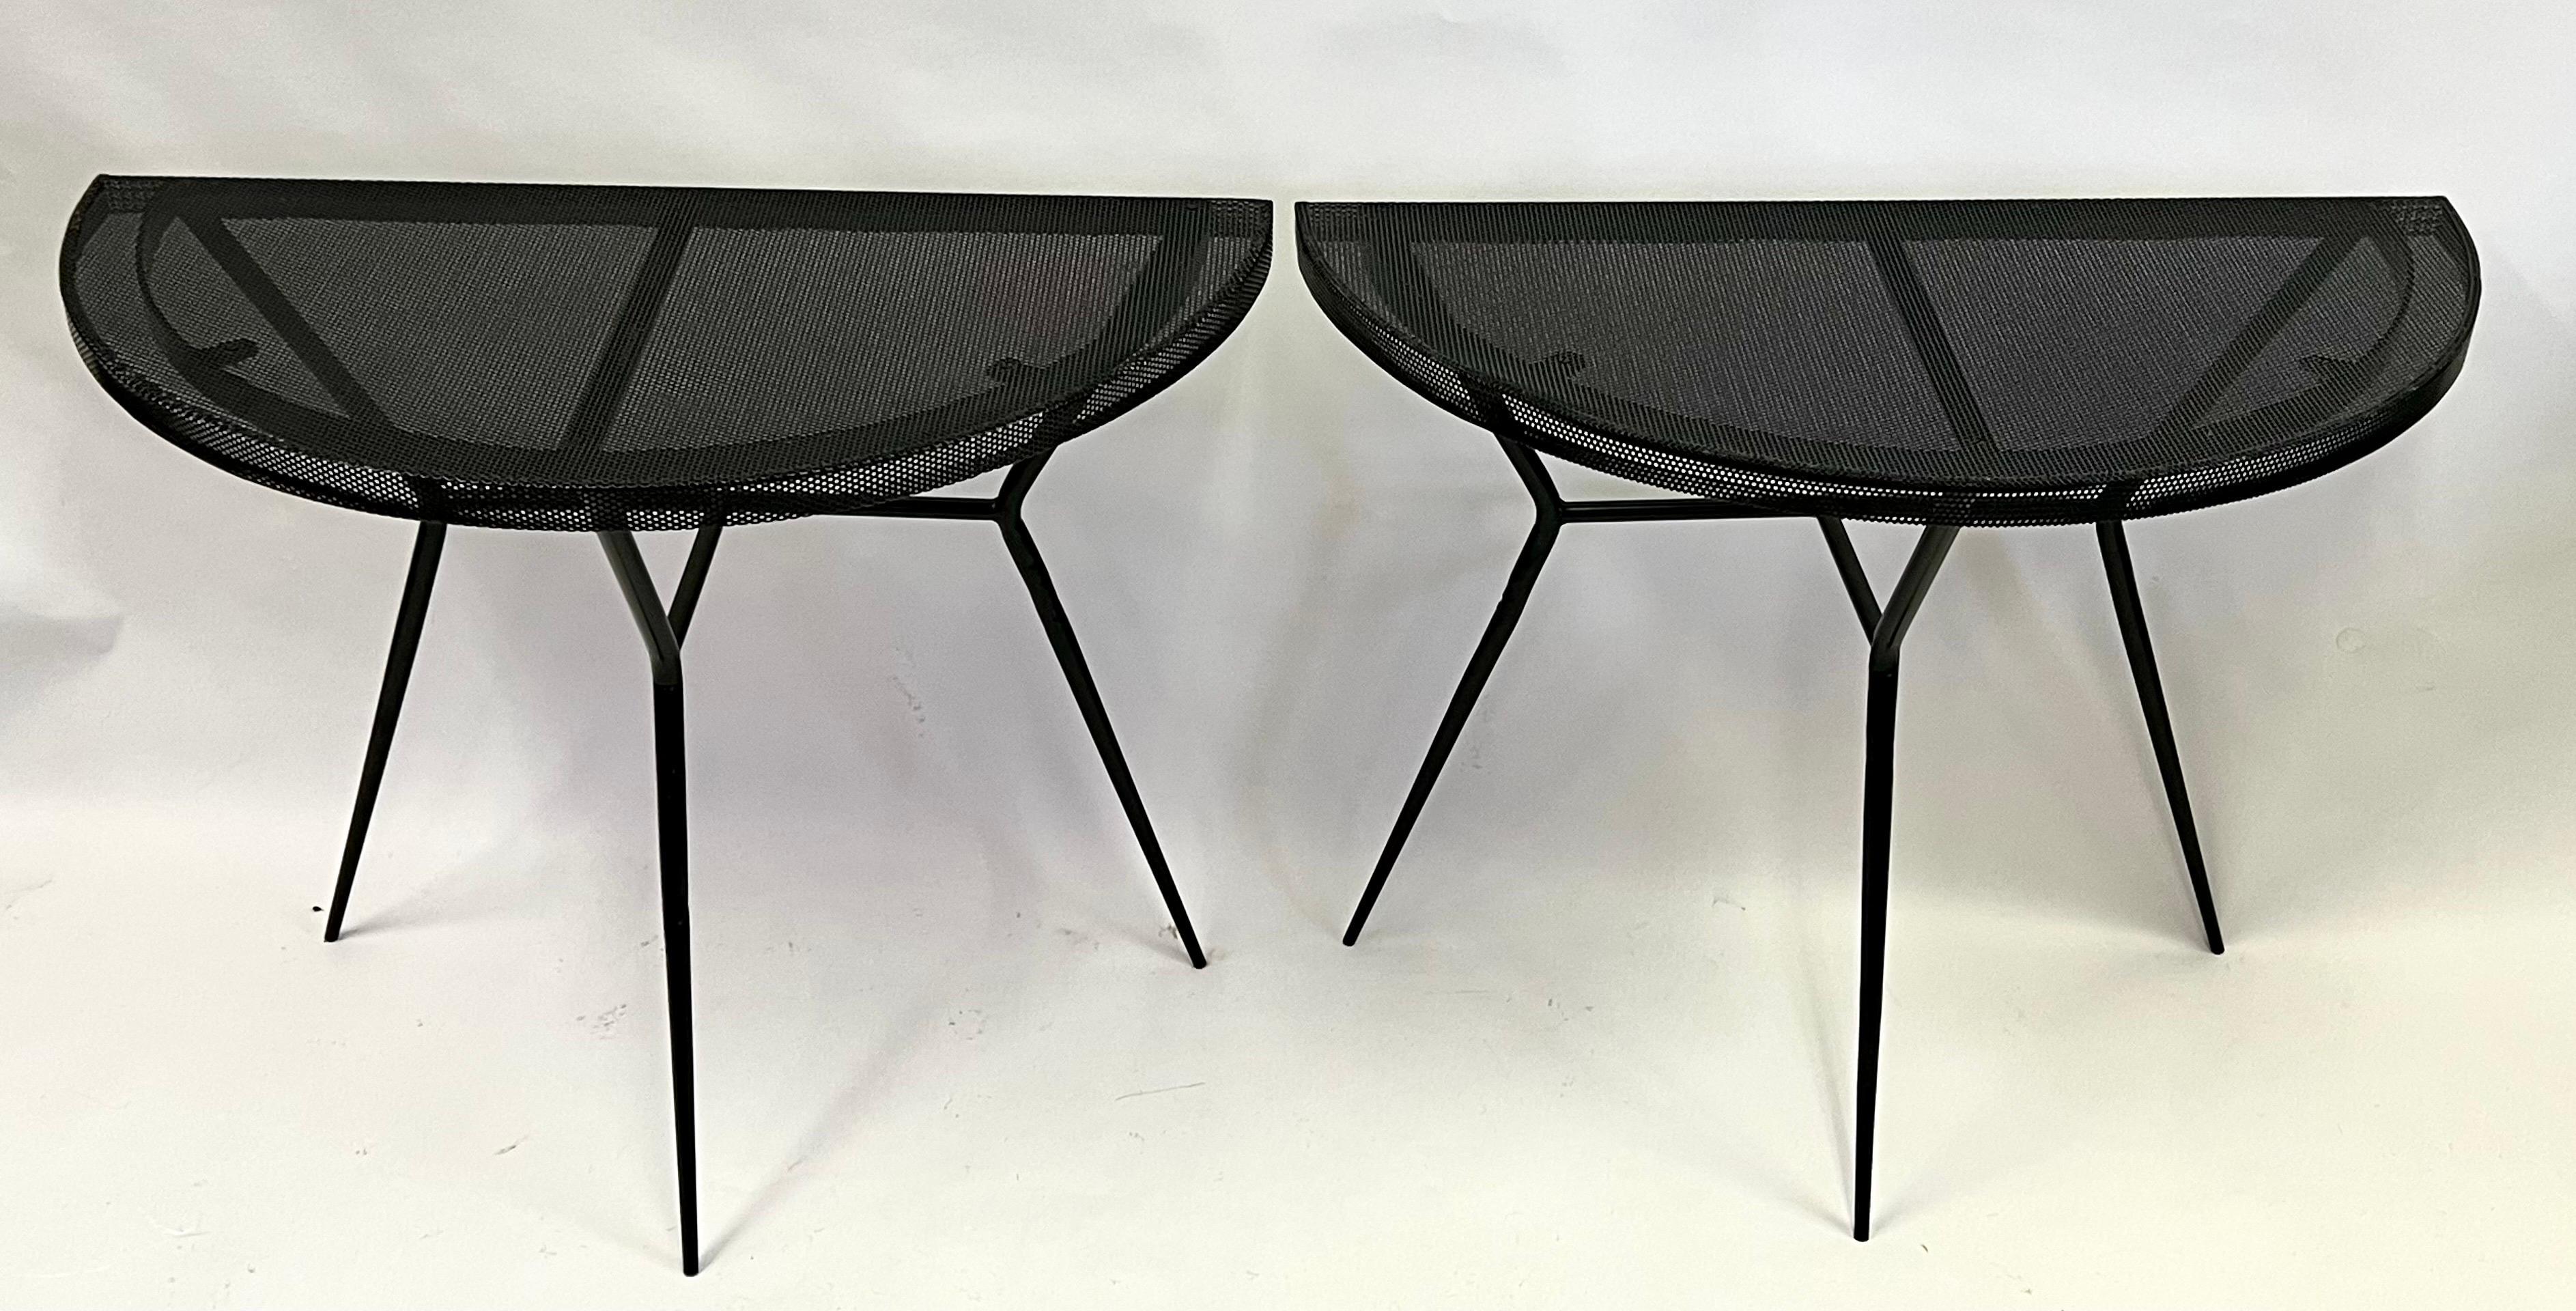 Une paire rare et importante de consoles/tables de canapé françaises de style mi-siècle moderne, attribuée à Mathieu Mategot. Les pièces sont typiques de Mategot et composées d'acier perforé et de noir émaillé ; elles reposent sur des bases